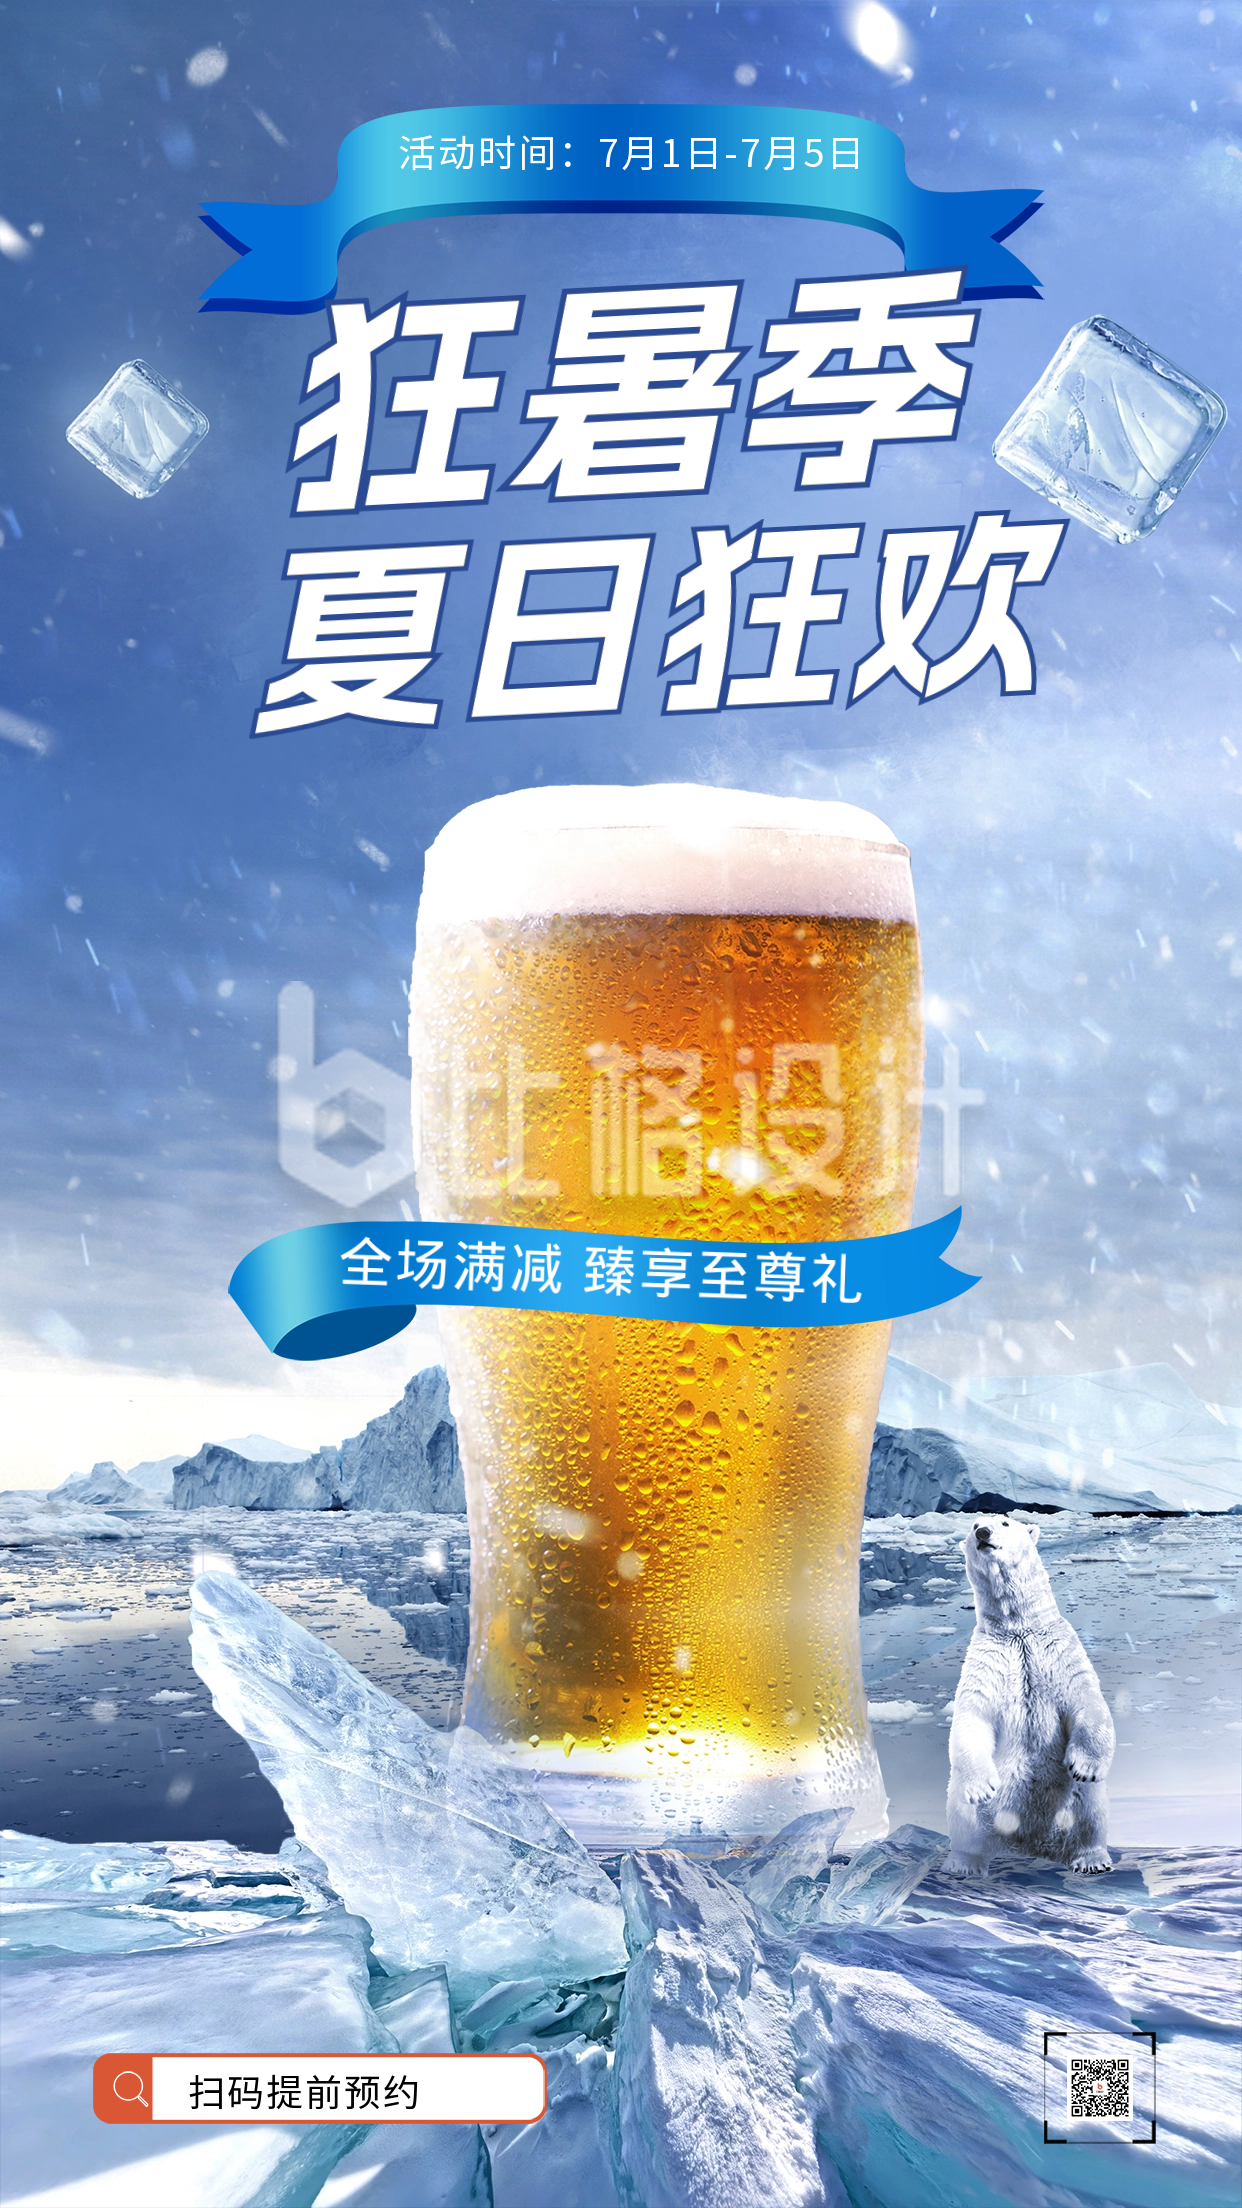 夏季冷饮活动促销海报